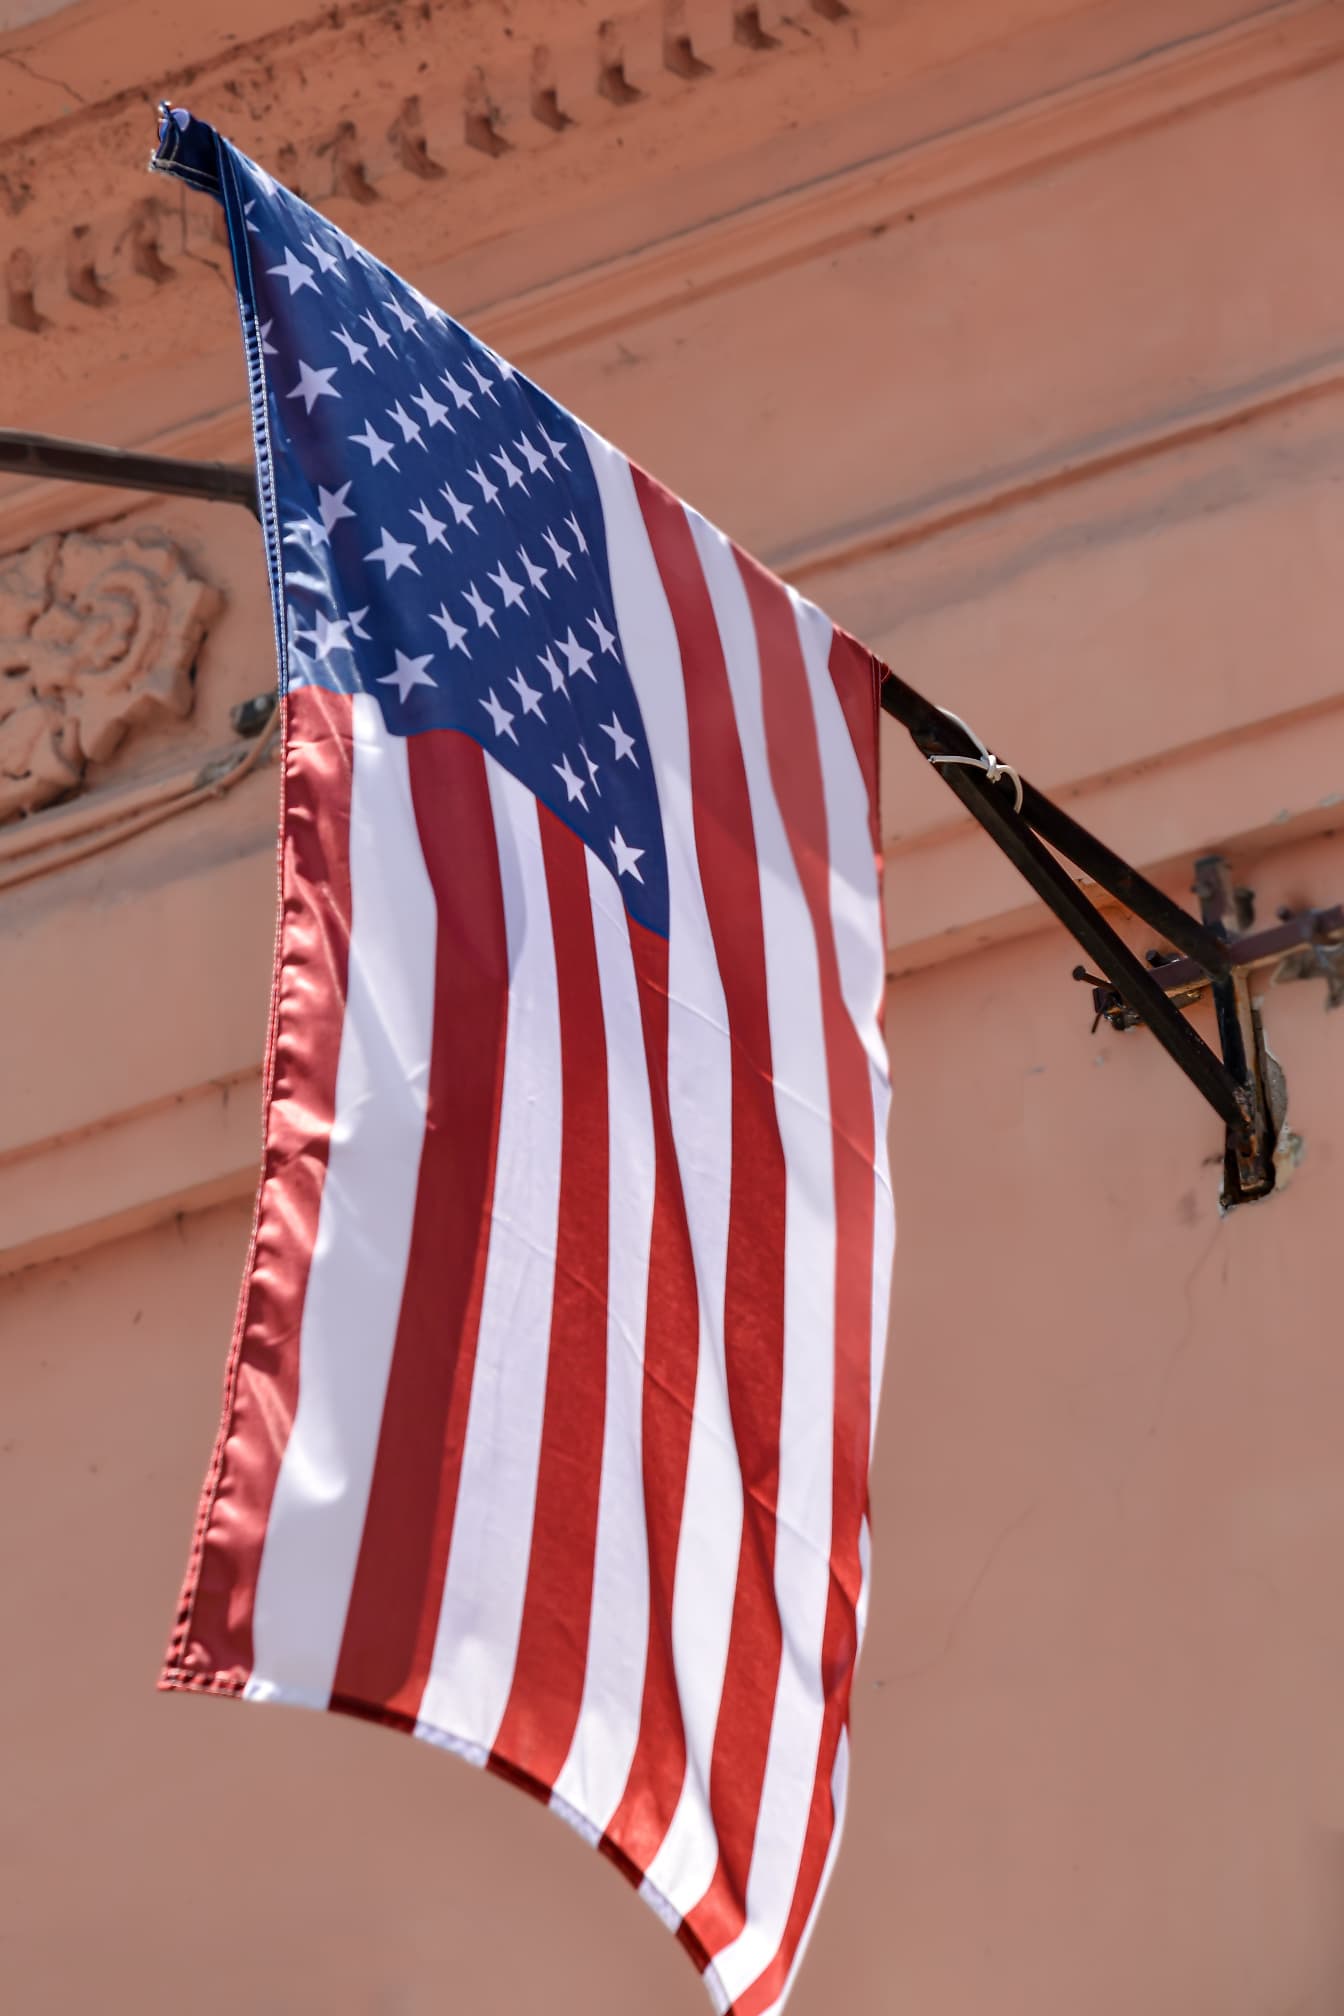 Bendera Amerika Serikat (USA) di tiang bendera dinding